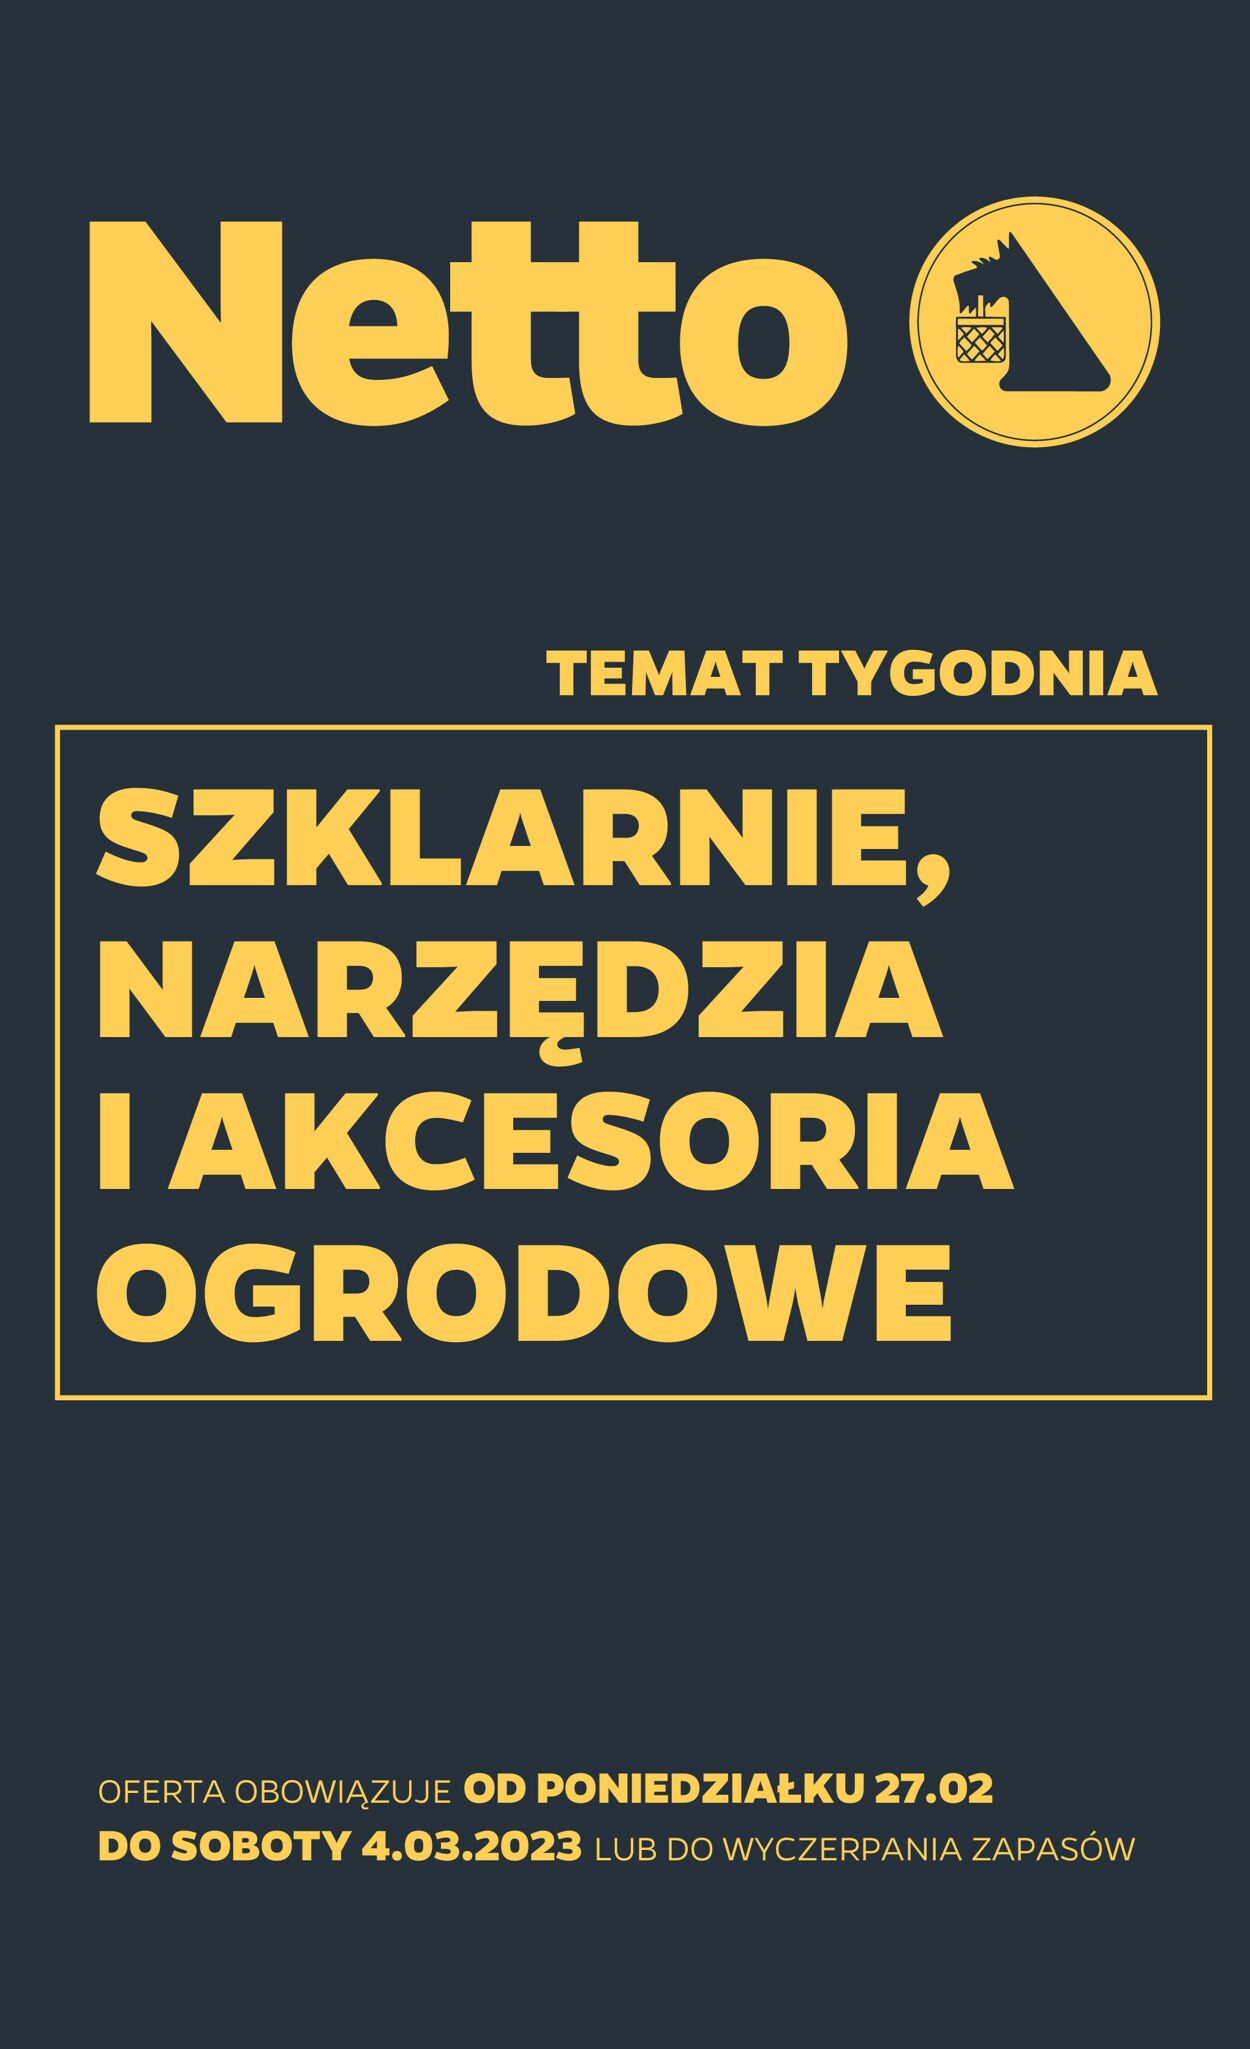 TESCO Gazetka od 27.02.2023